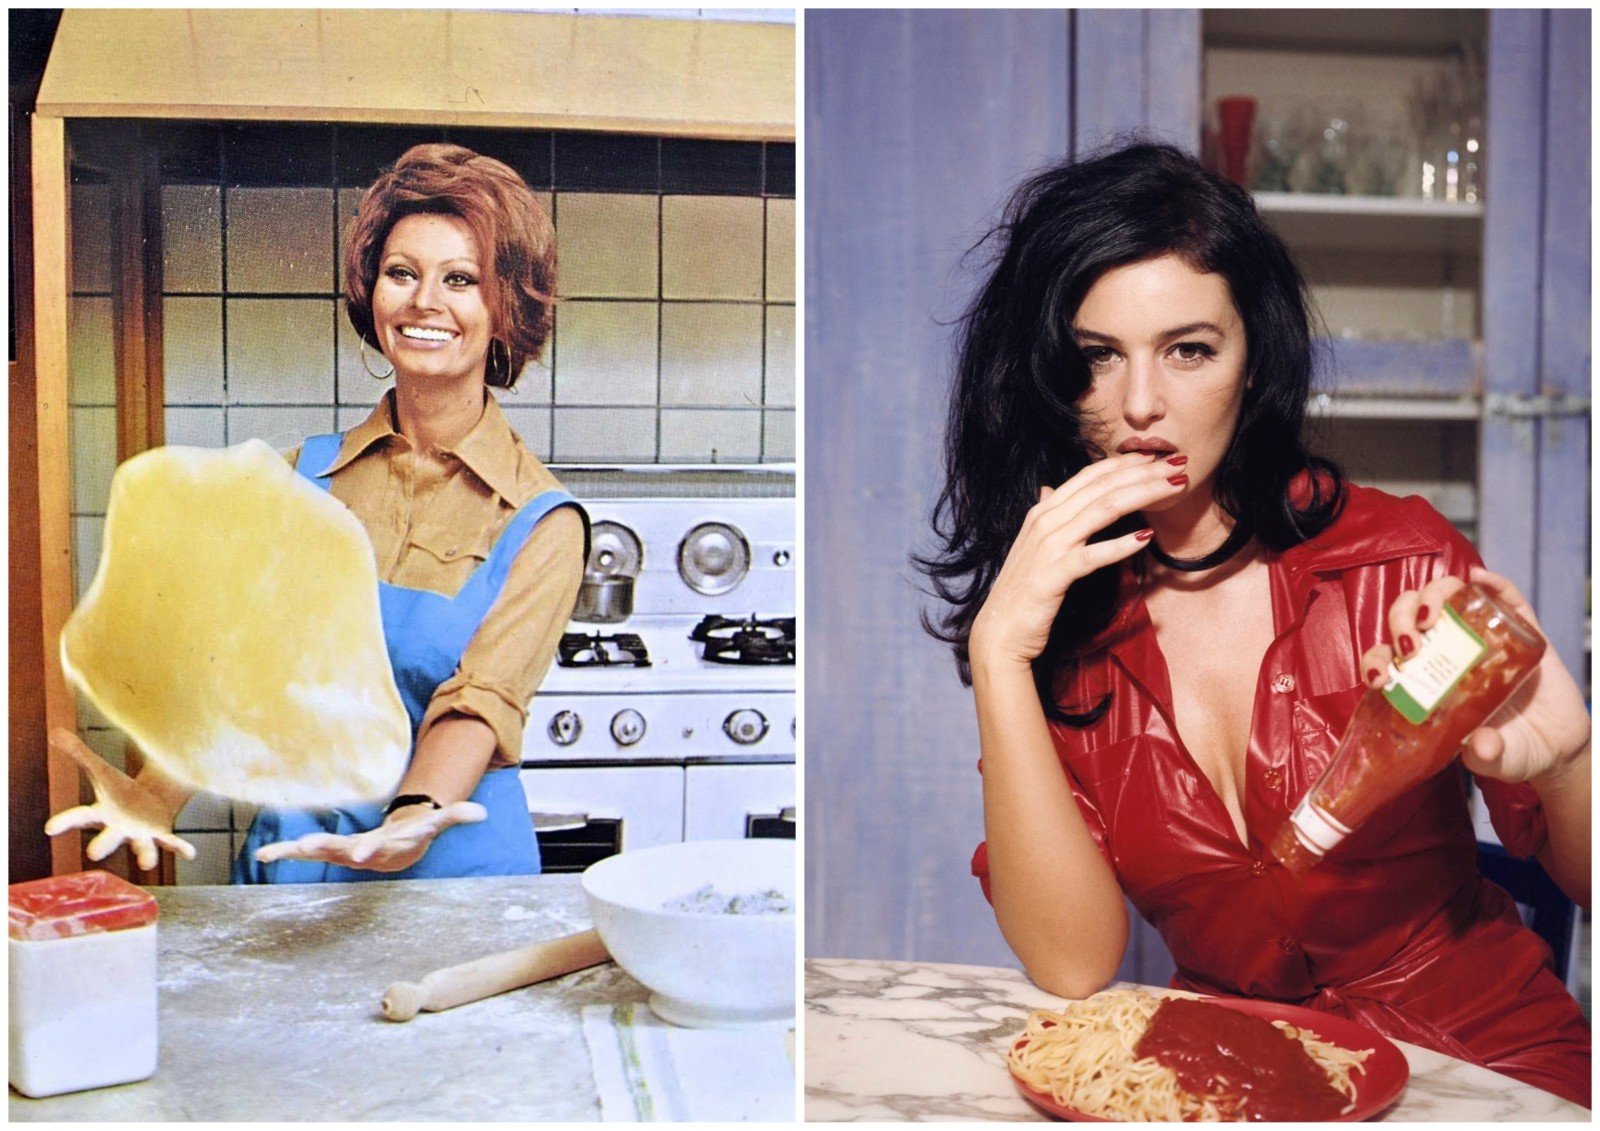 Как есть пасту, пиццу, тирамису и не толстеть? Итальянские секреты красоты Софи Лорен и Моники Беллуччи